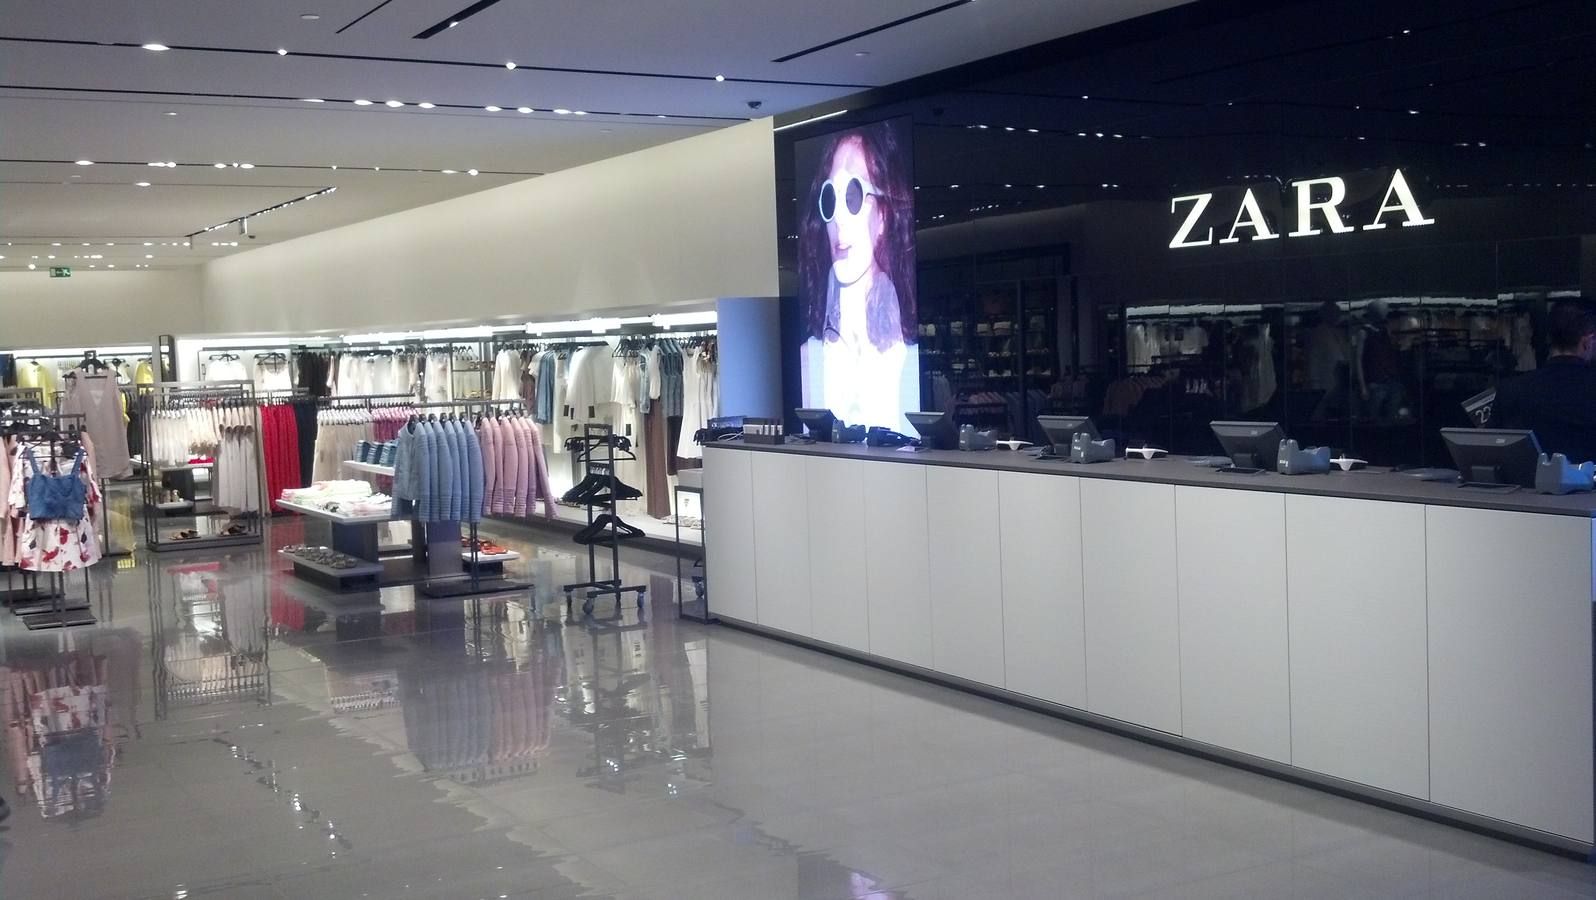 Zara transforma tienda y vende su ropa de maner diferente